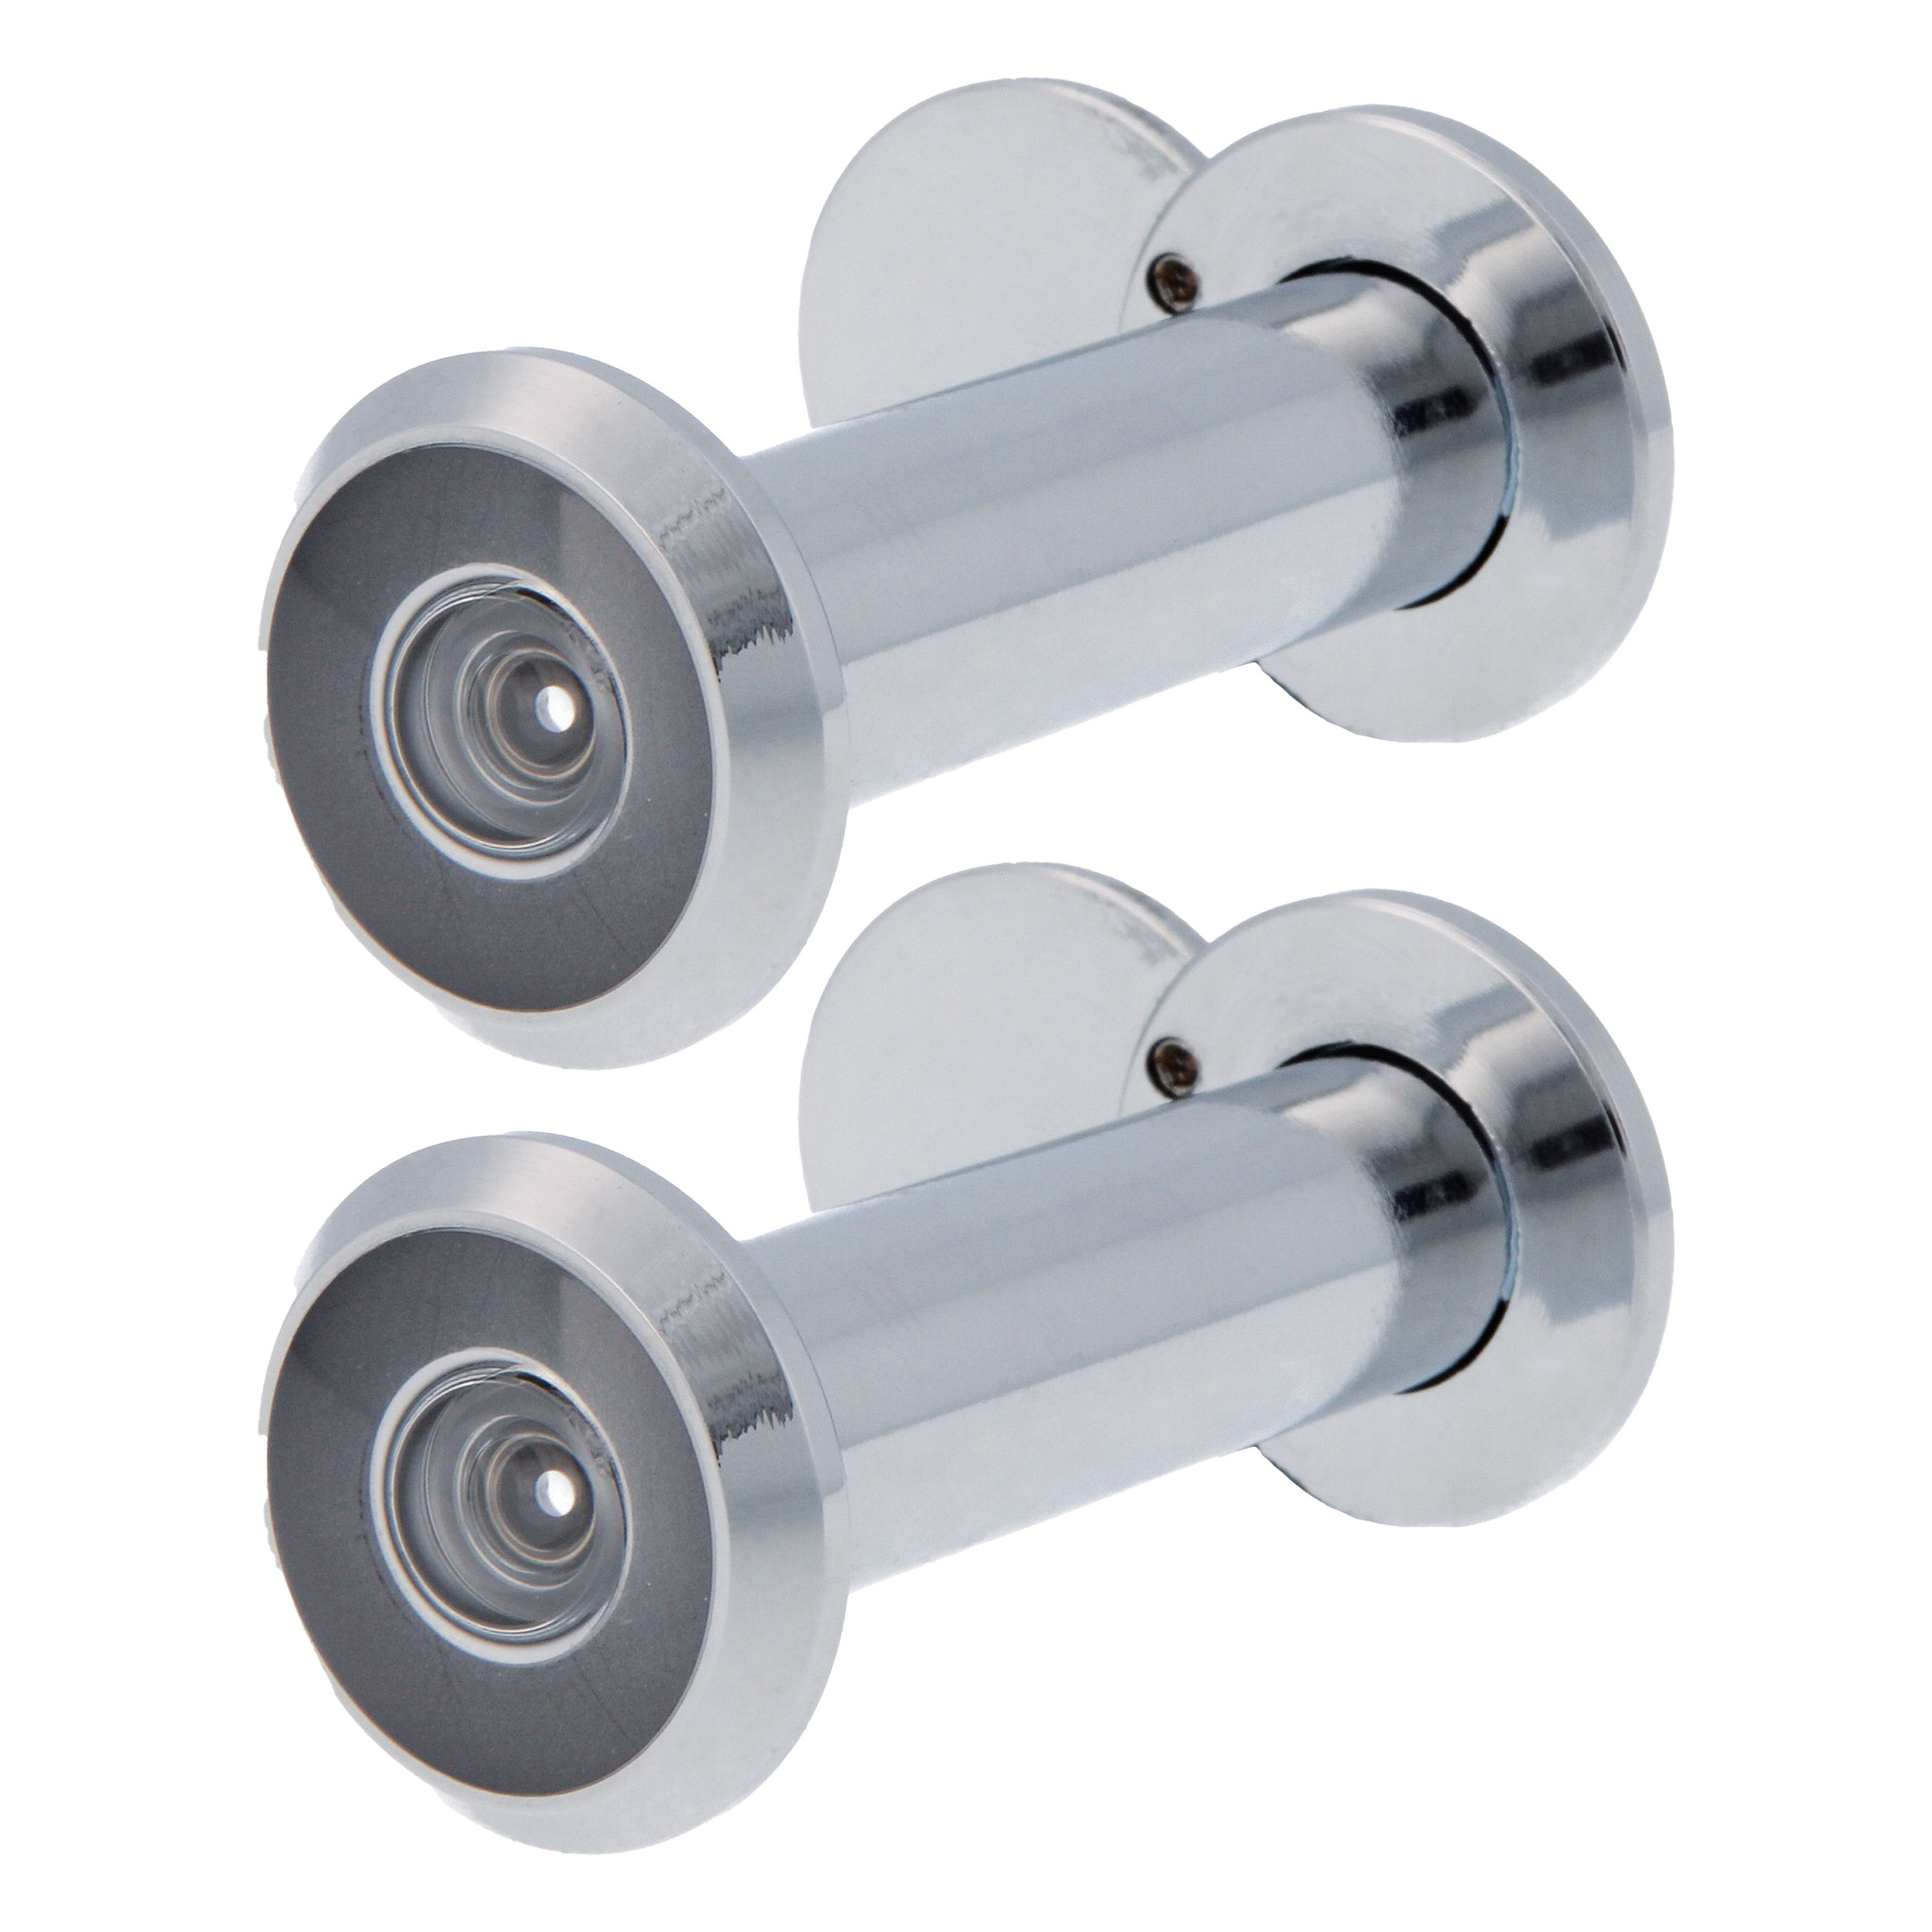 AMIG deurspion-kijkgat 2x verchroomd -? deurdikte 60 tot 85mm -160 graden kijkhoek -16mm boorgat